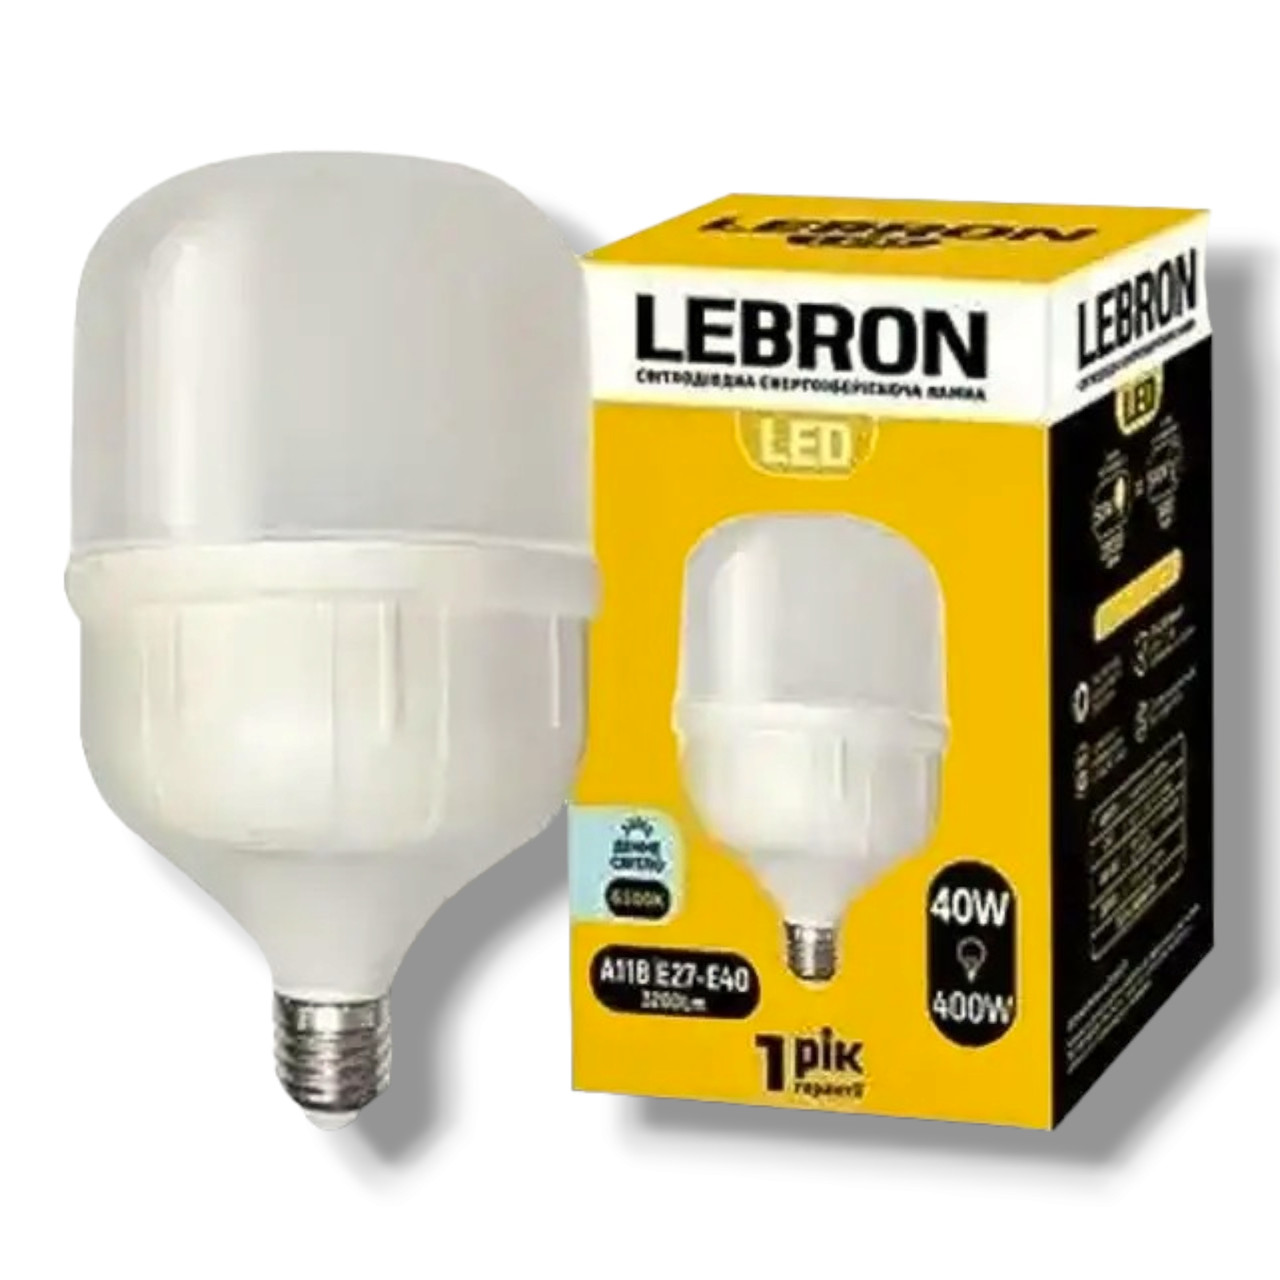 Світлодіодна LED лампа LEBRON L-А118, 40W, Е27-Е40, 6500K, 3200Lm. (арт.11-18-22-1)